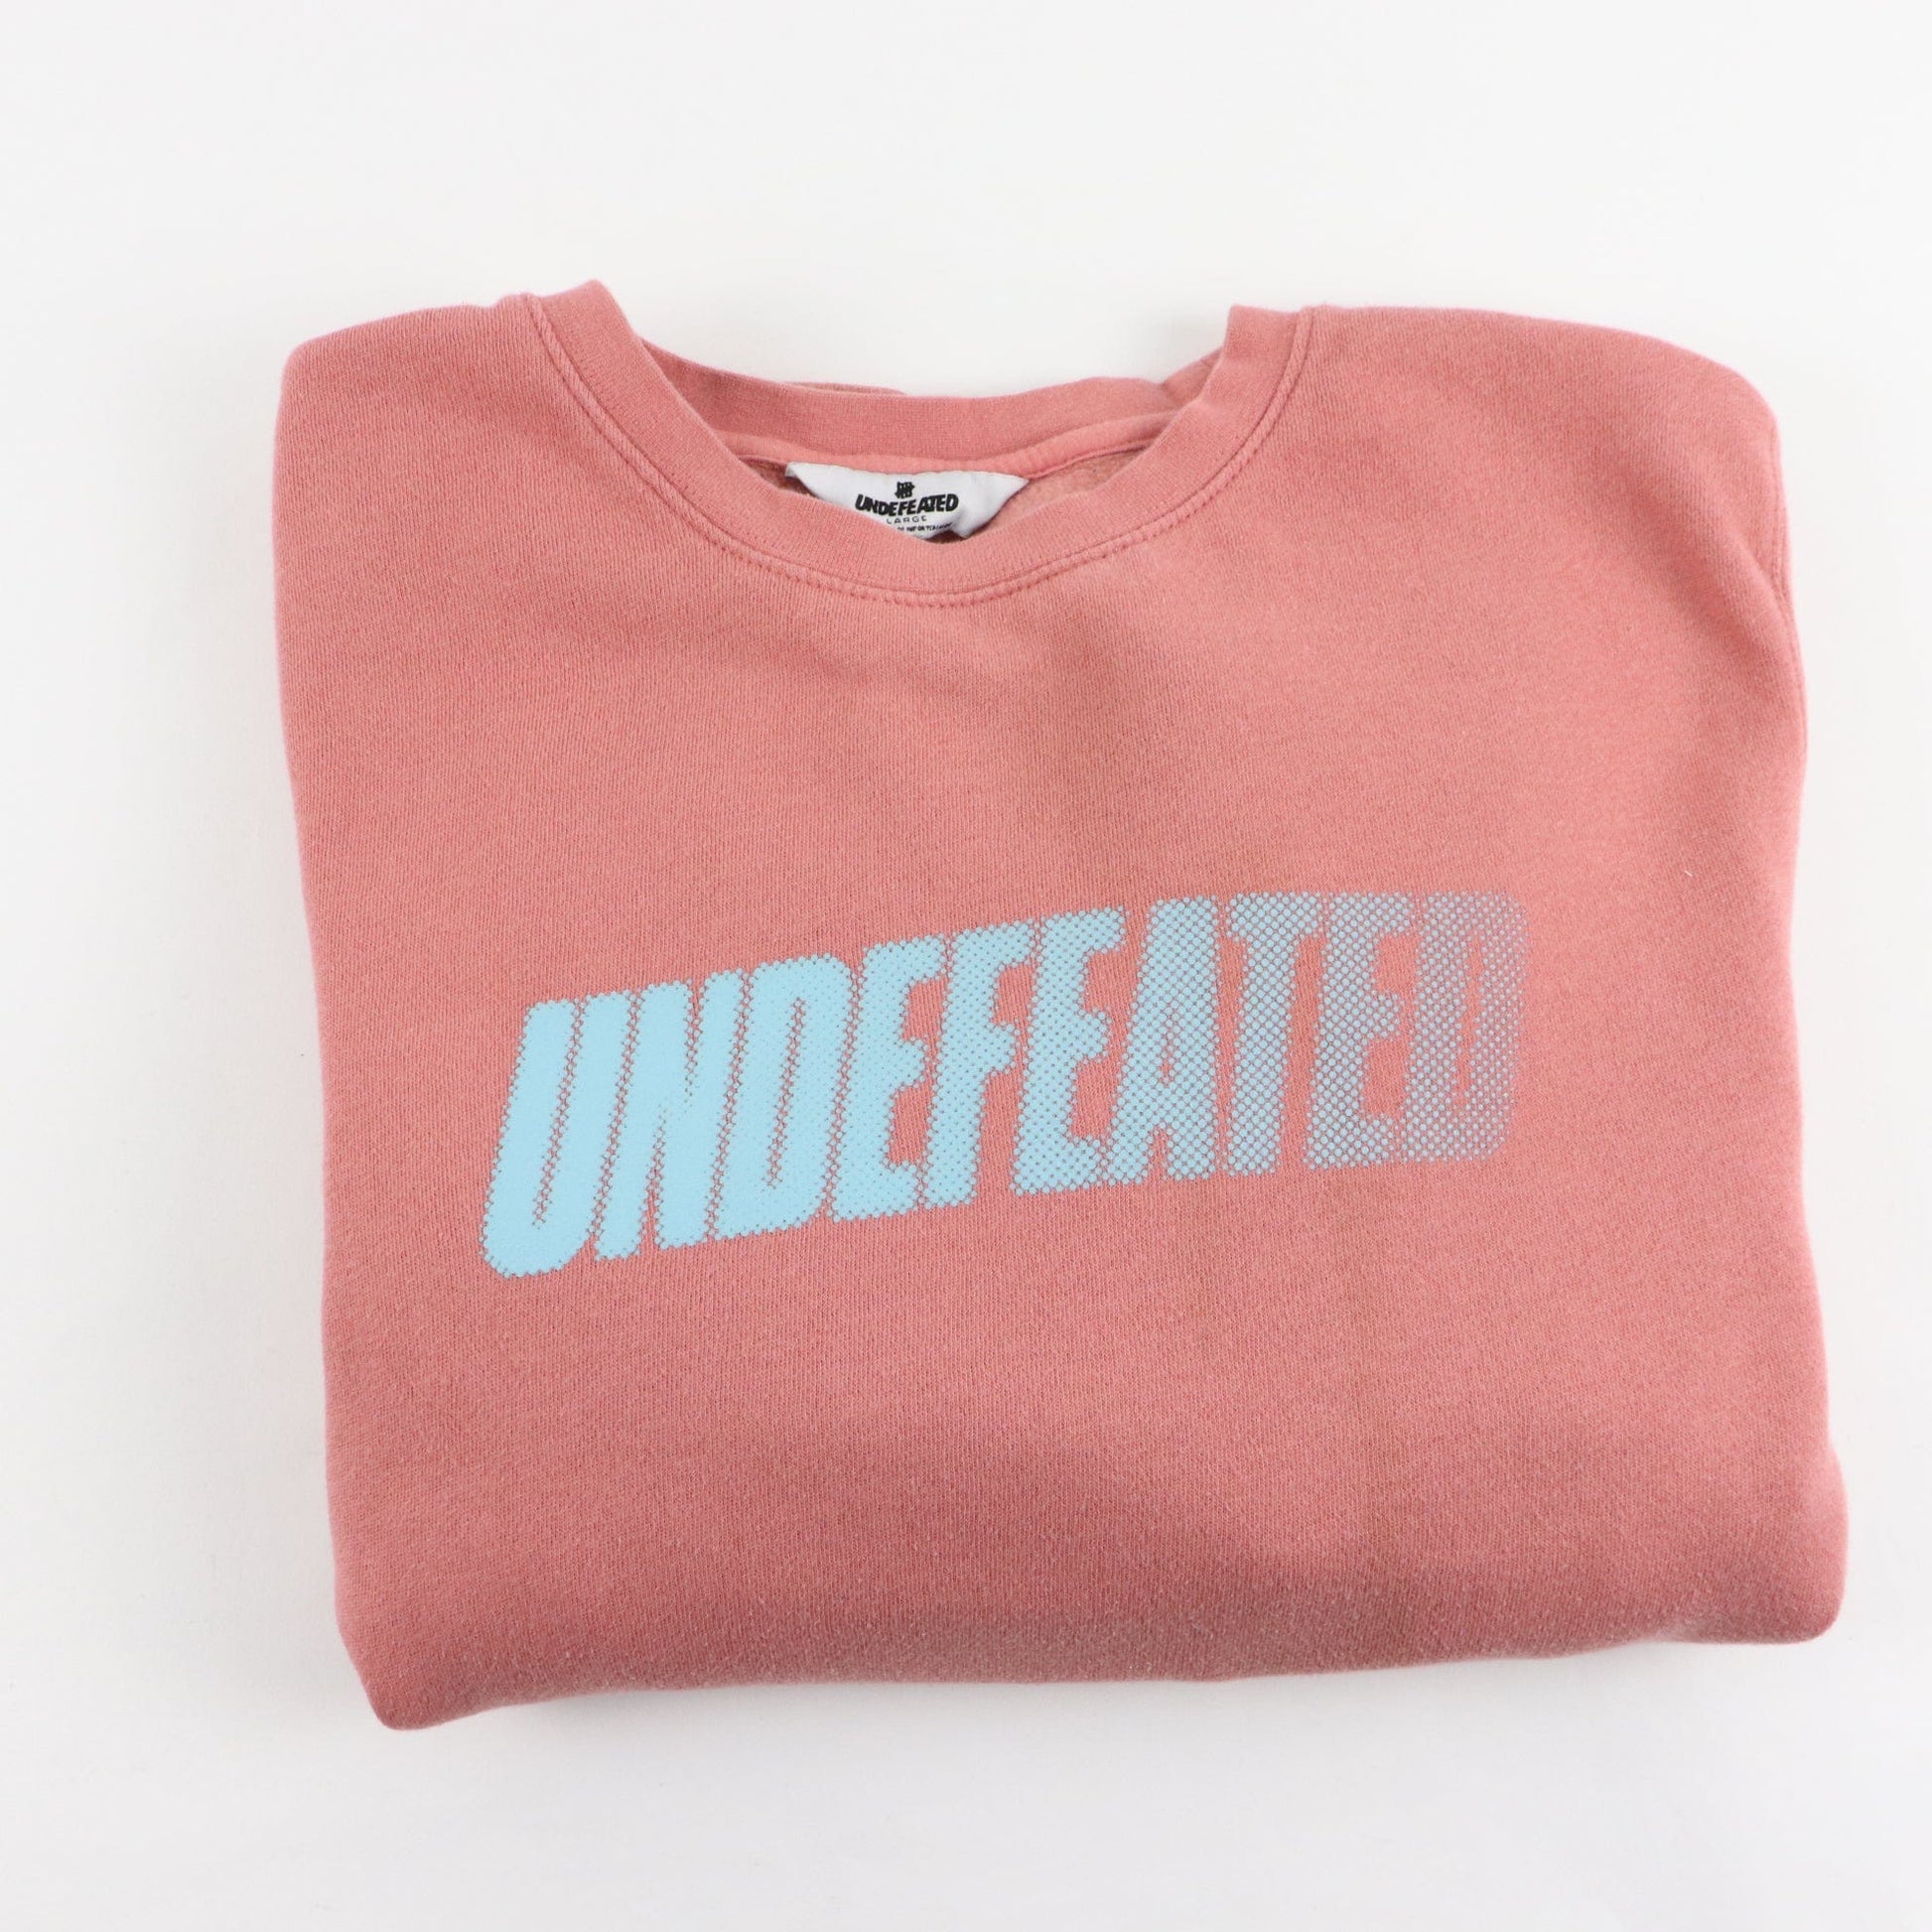 Other Sweatshirts & Hoodies Undefeated Motion Logo Sweatshirt Size Large